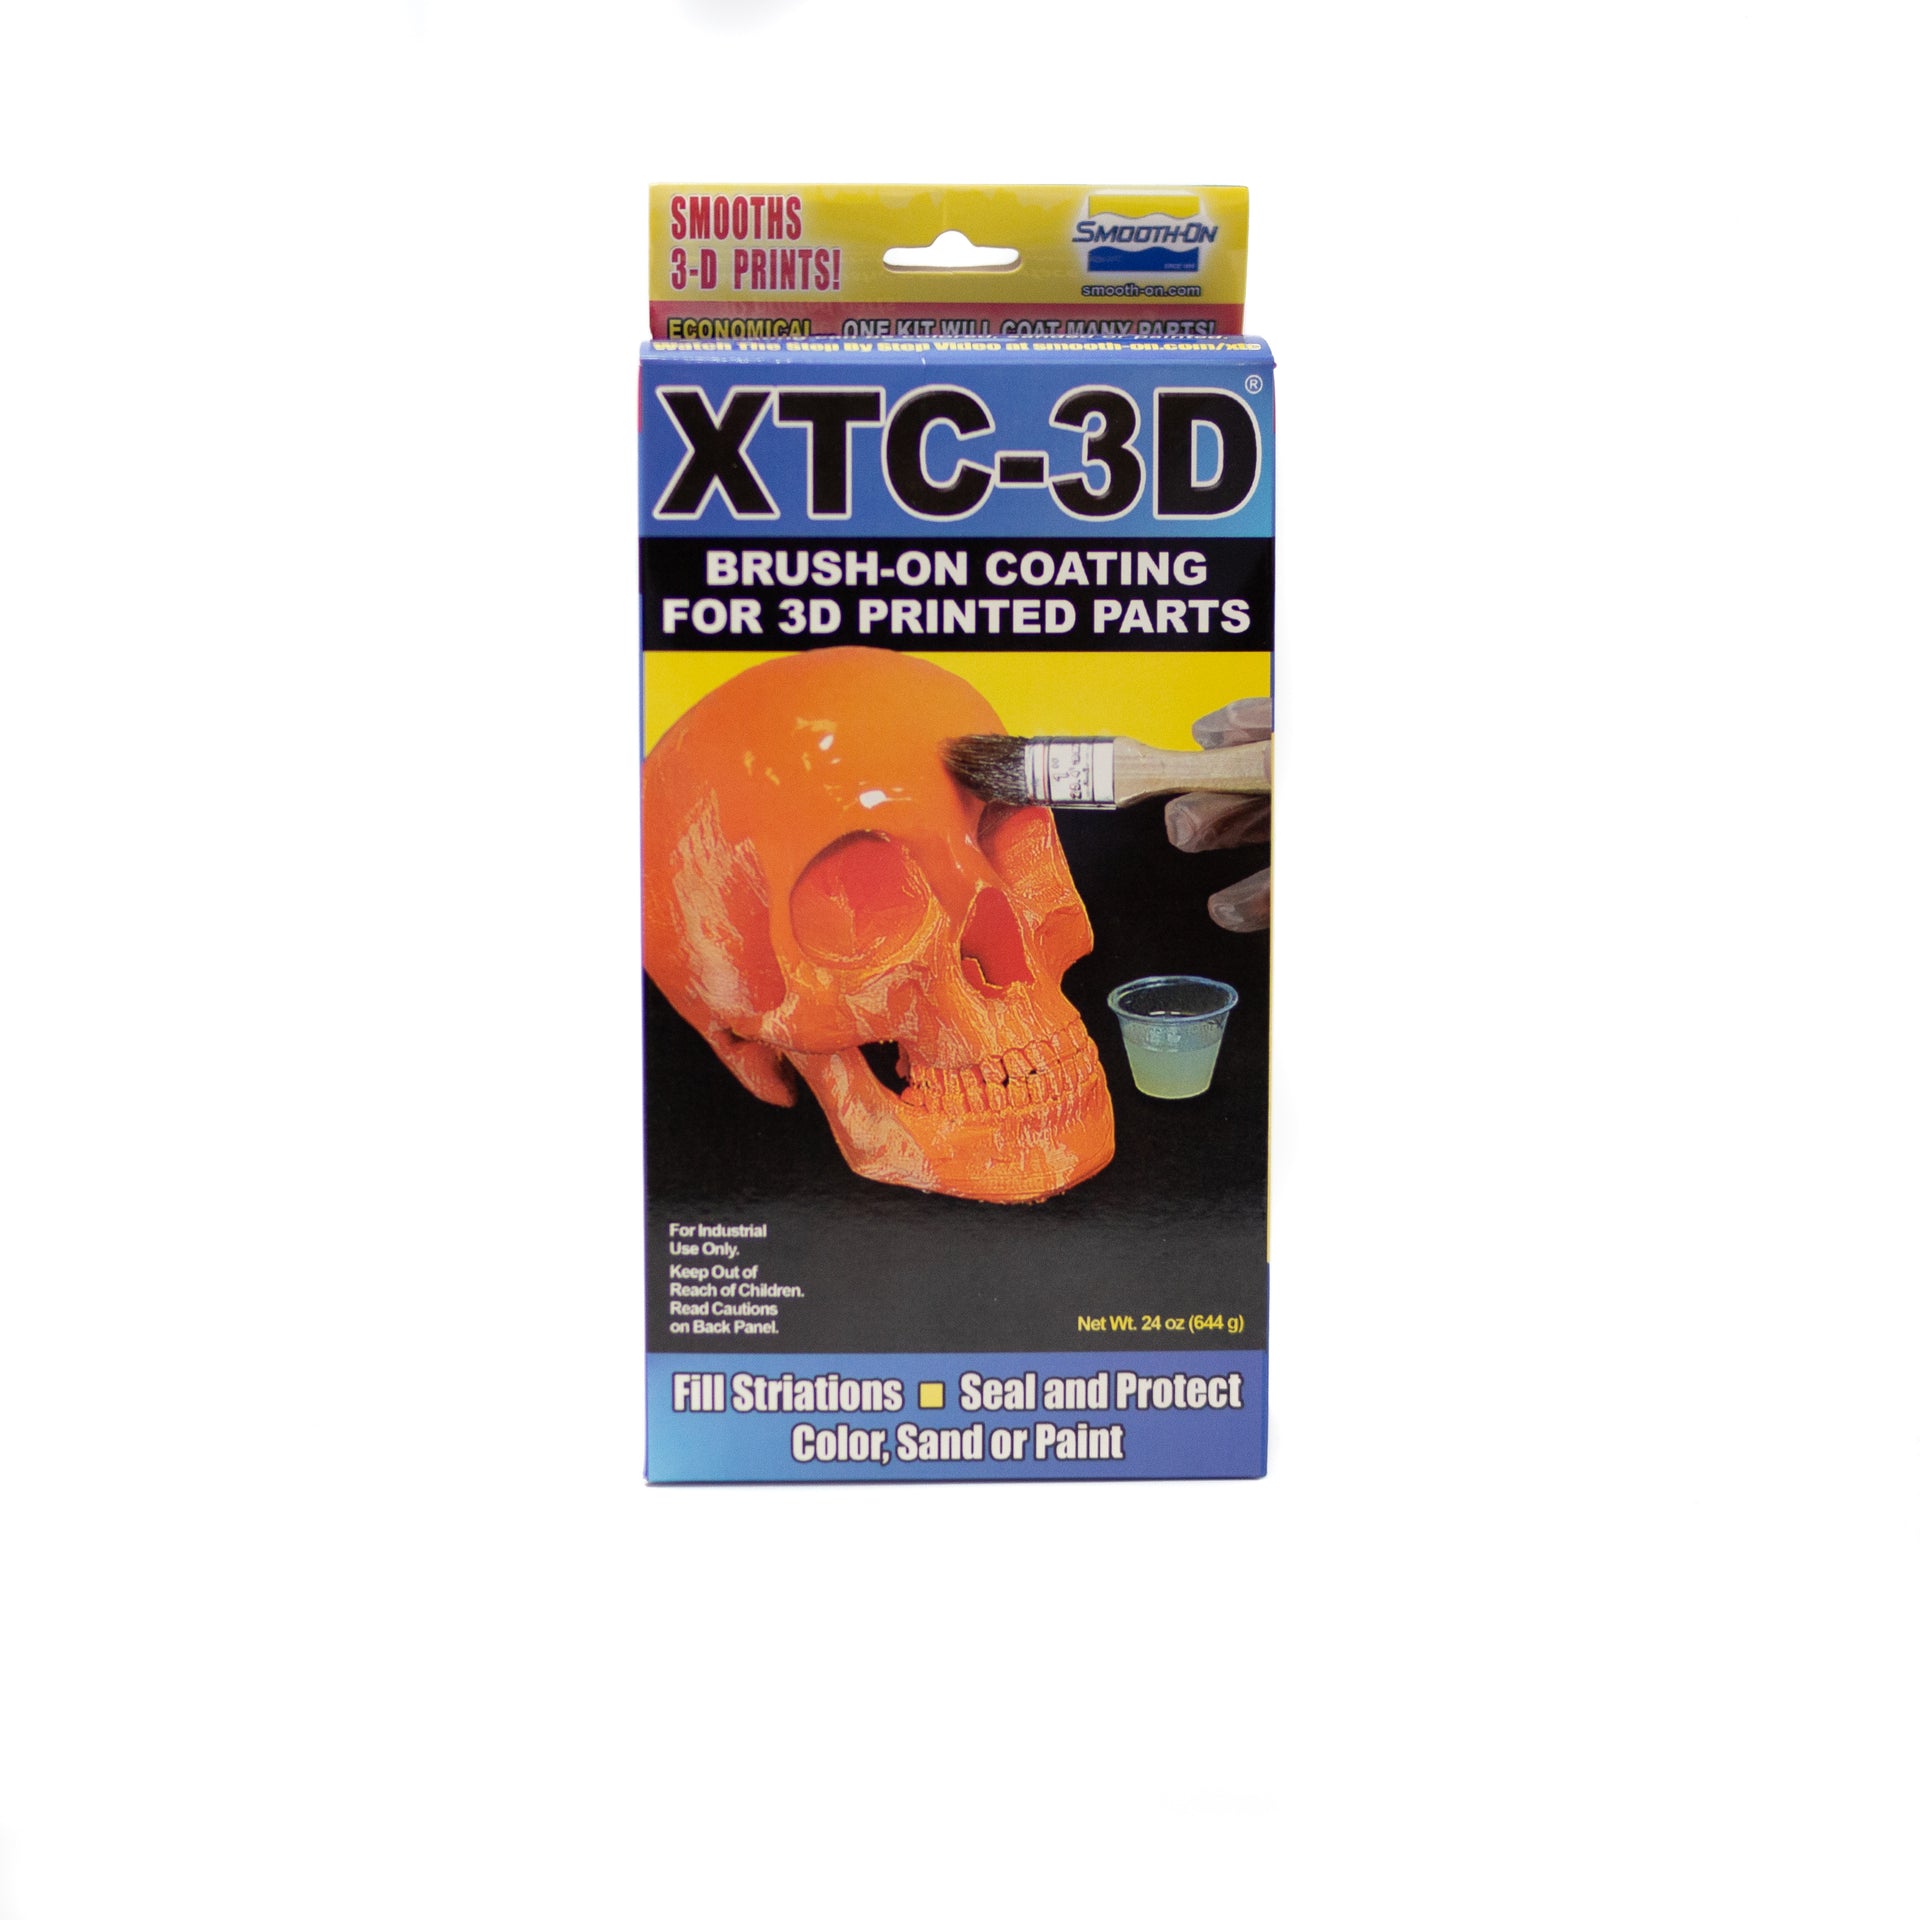 Achat / Vente XTC 3D Lissage impression 3D - Accessoires impression 3D